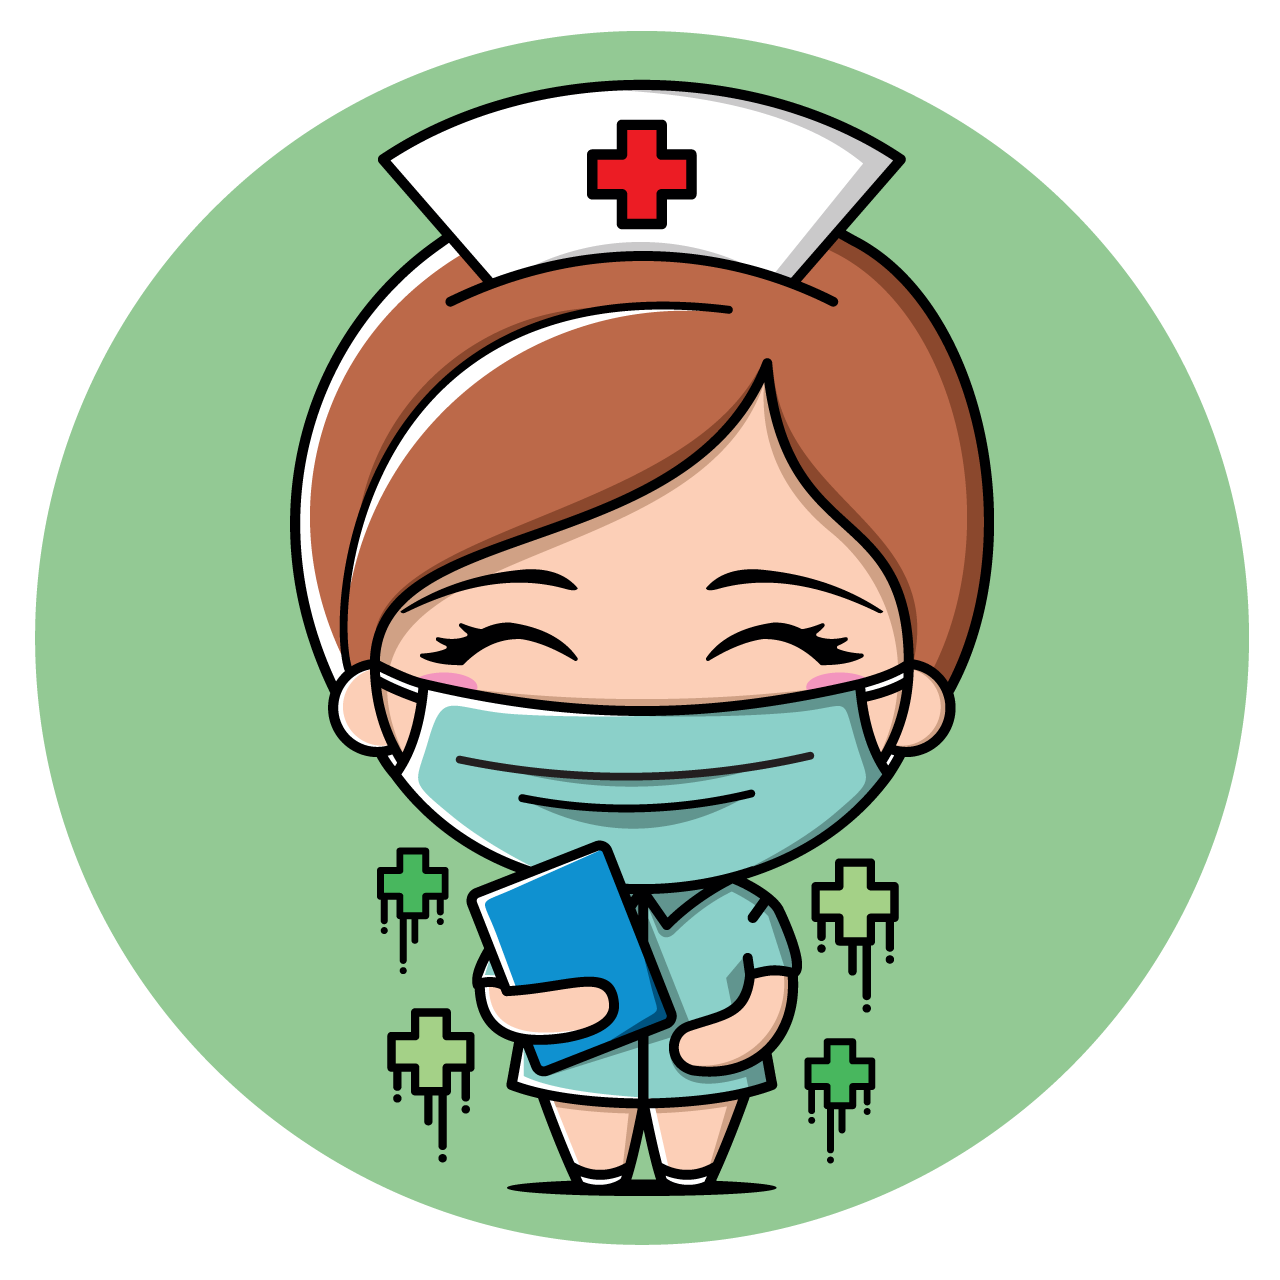 cartoon cute nurse